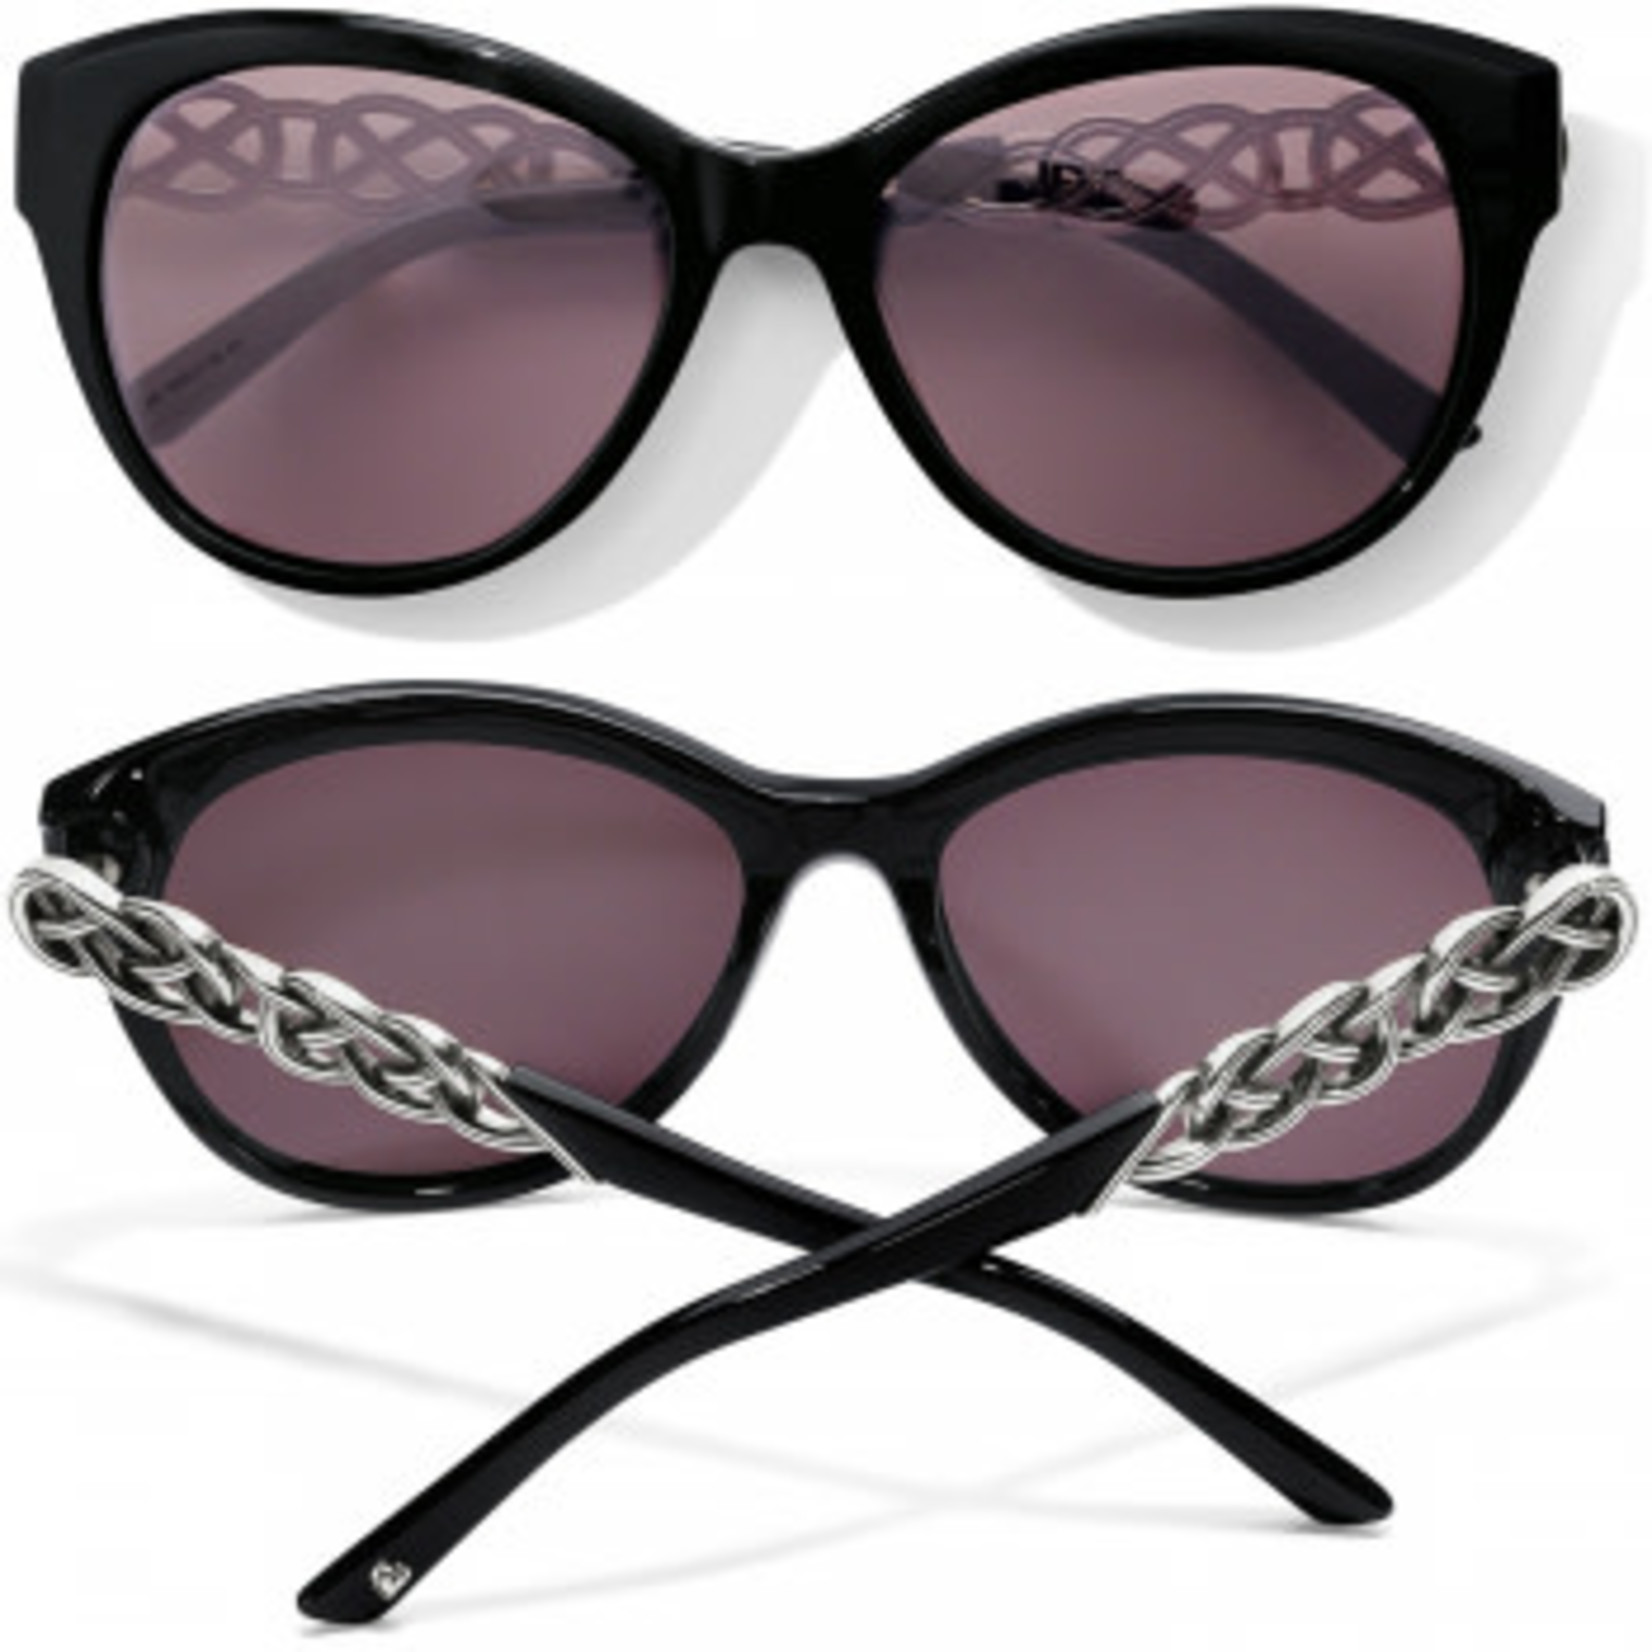 Brighton Interlok Braid Sunglasses in Black